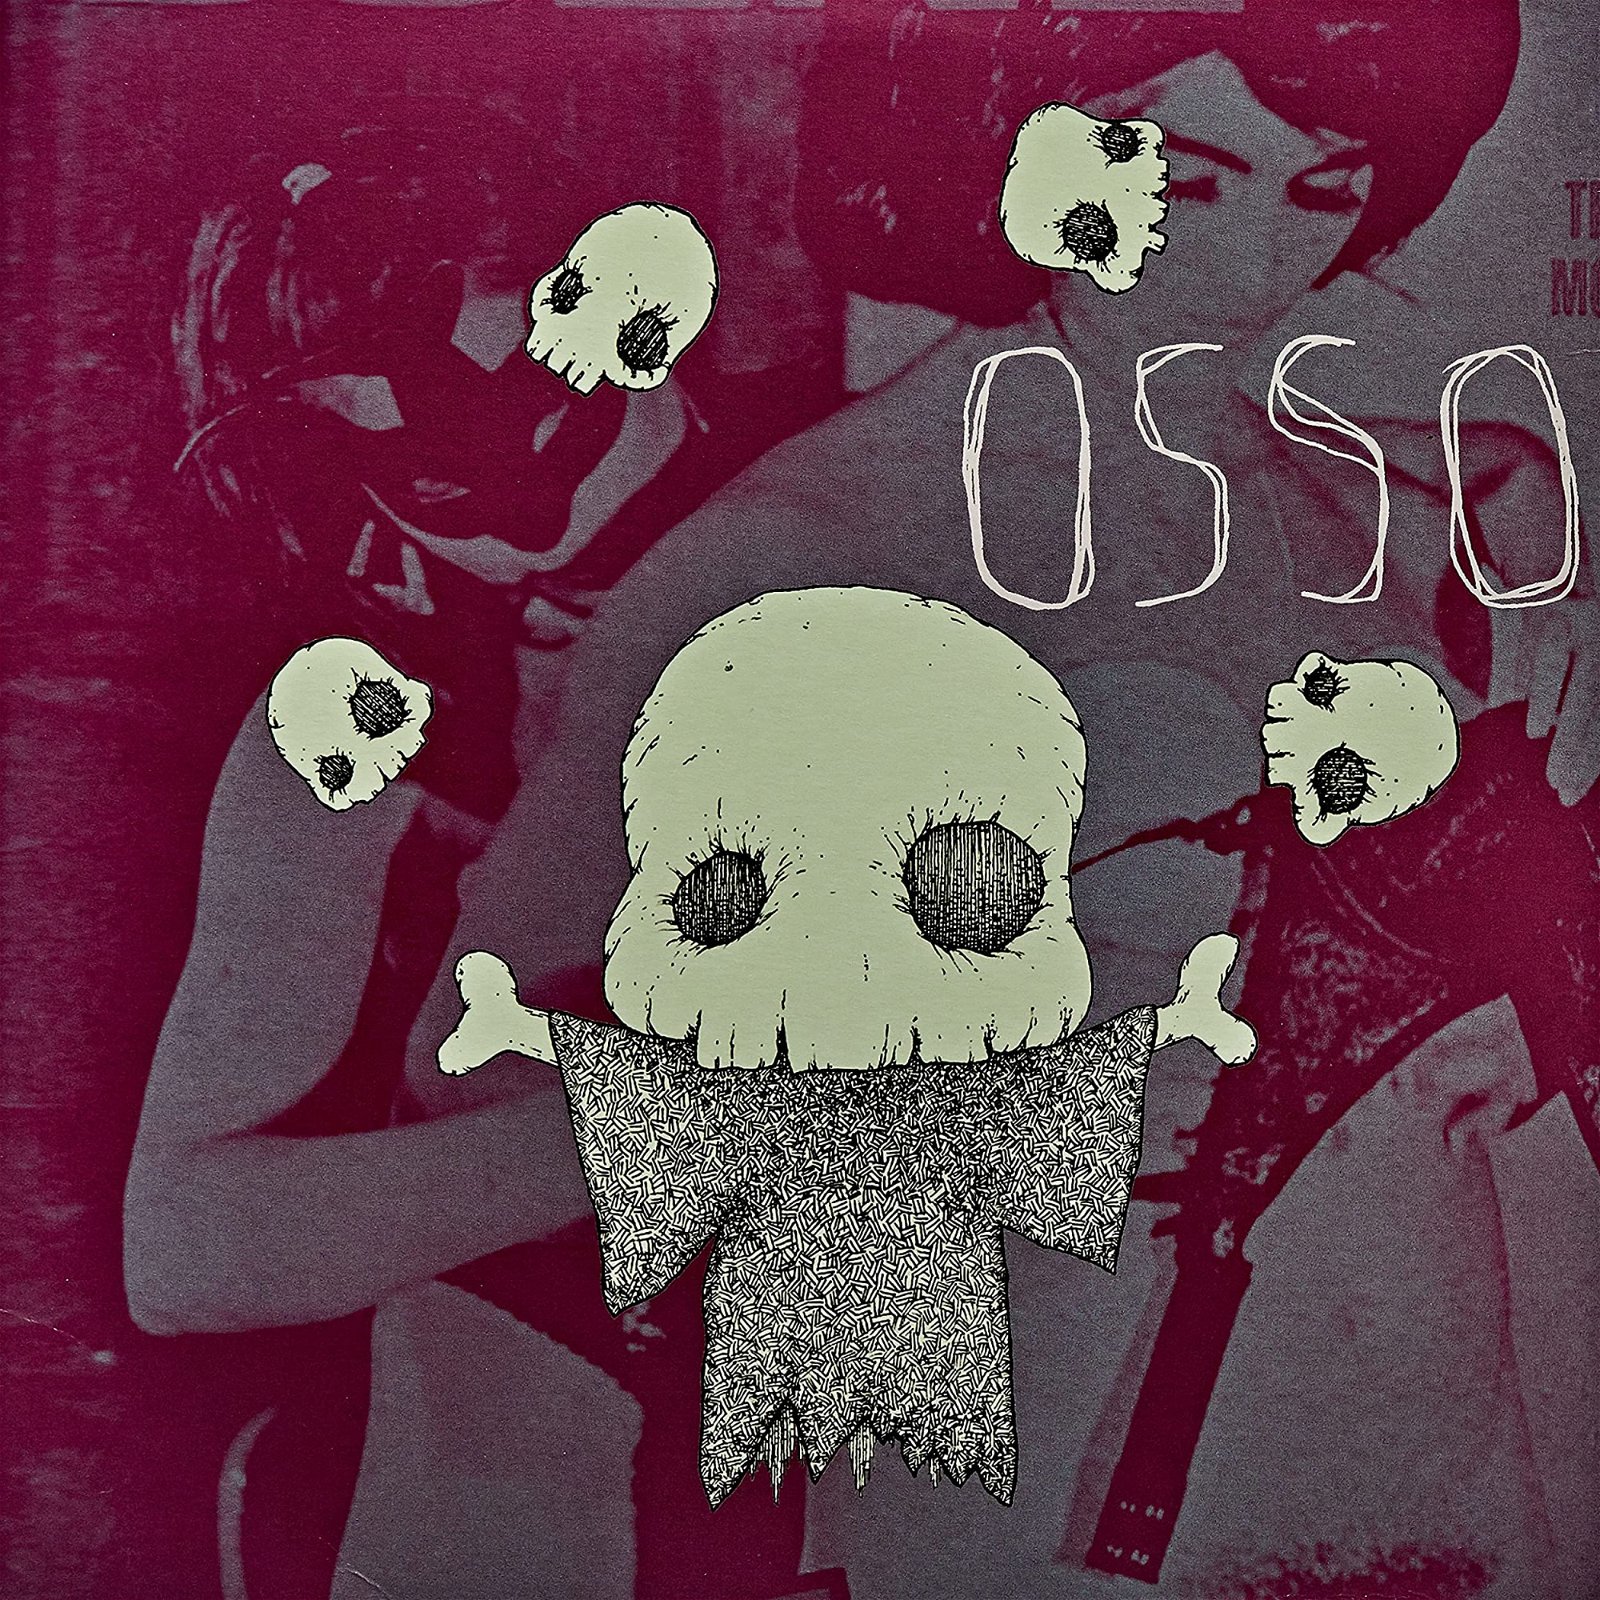 CD Shop - OSSO OSSO